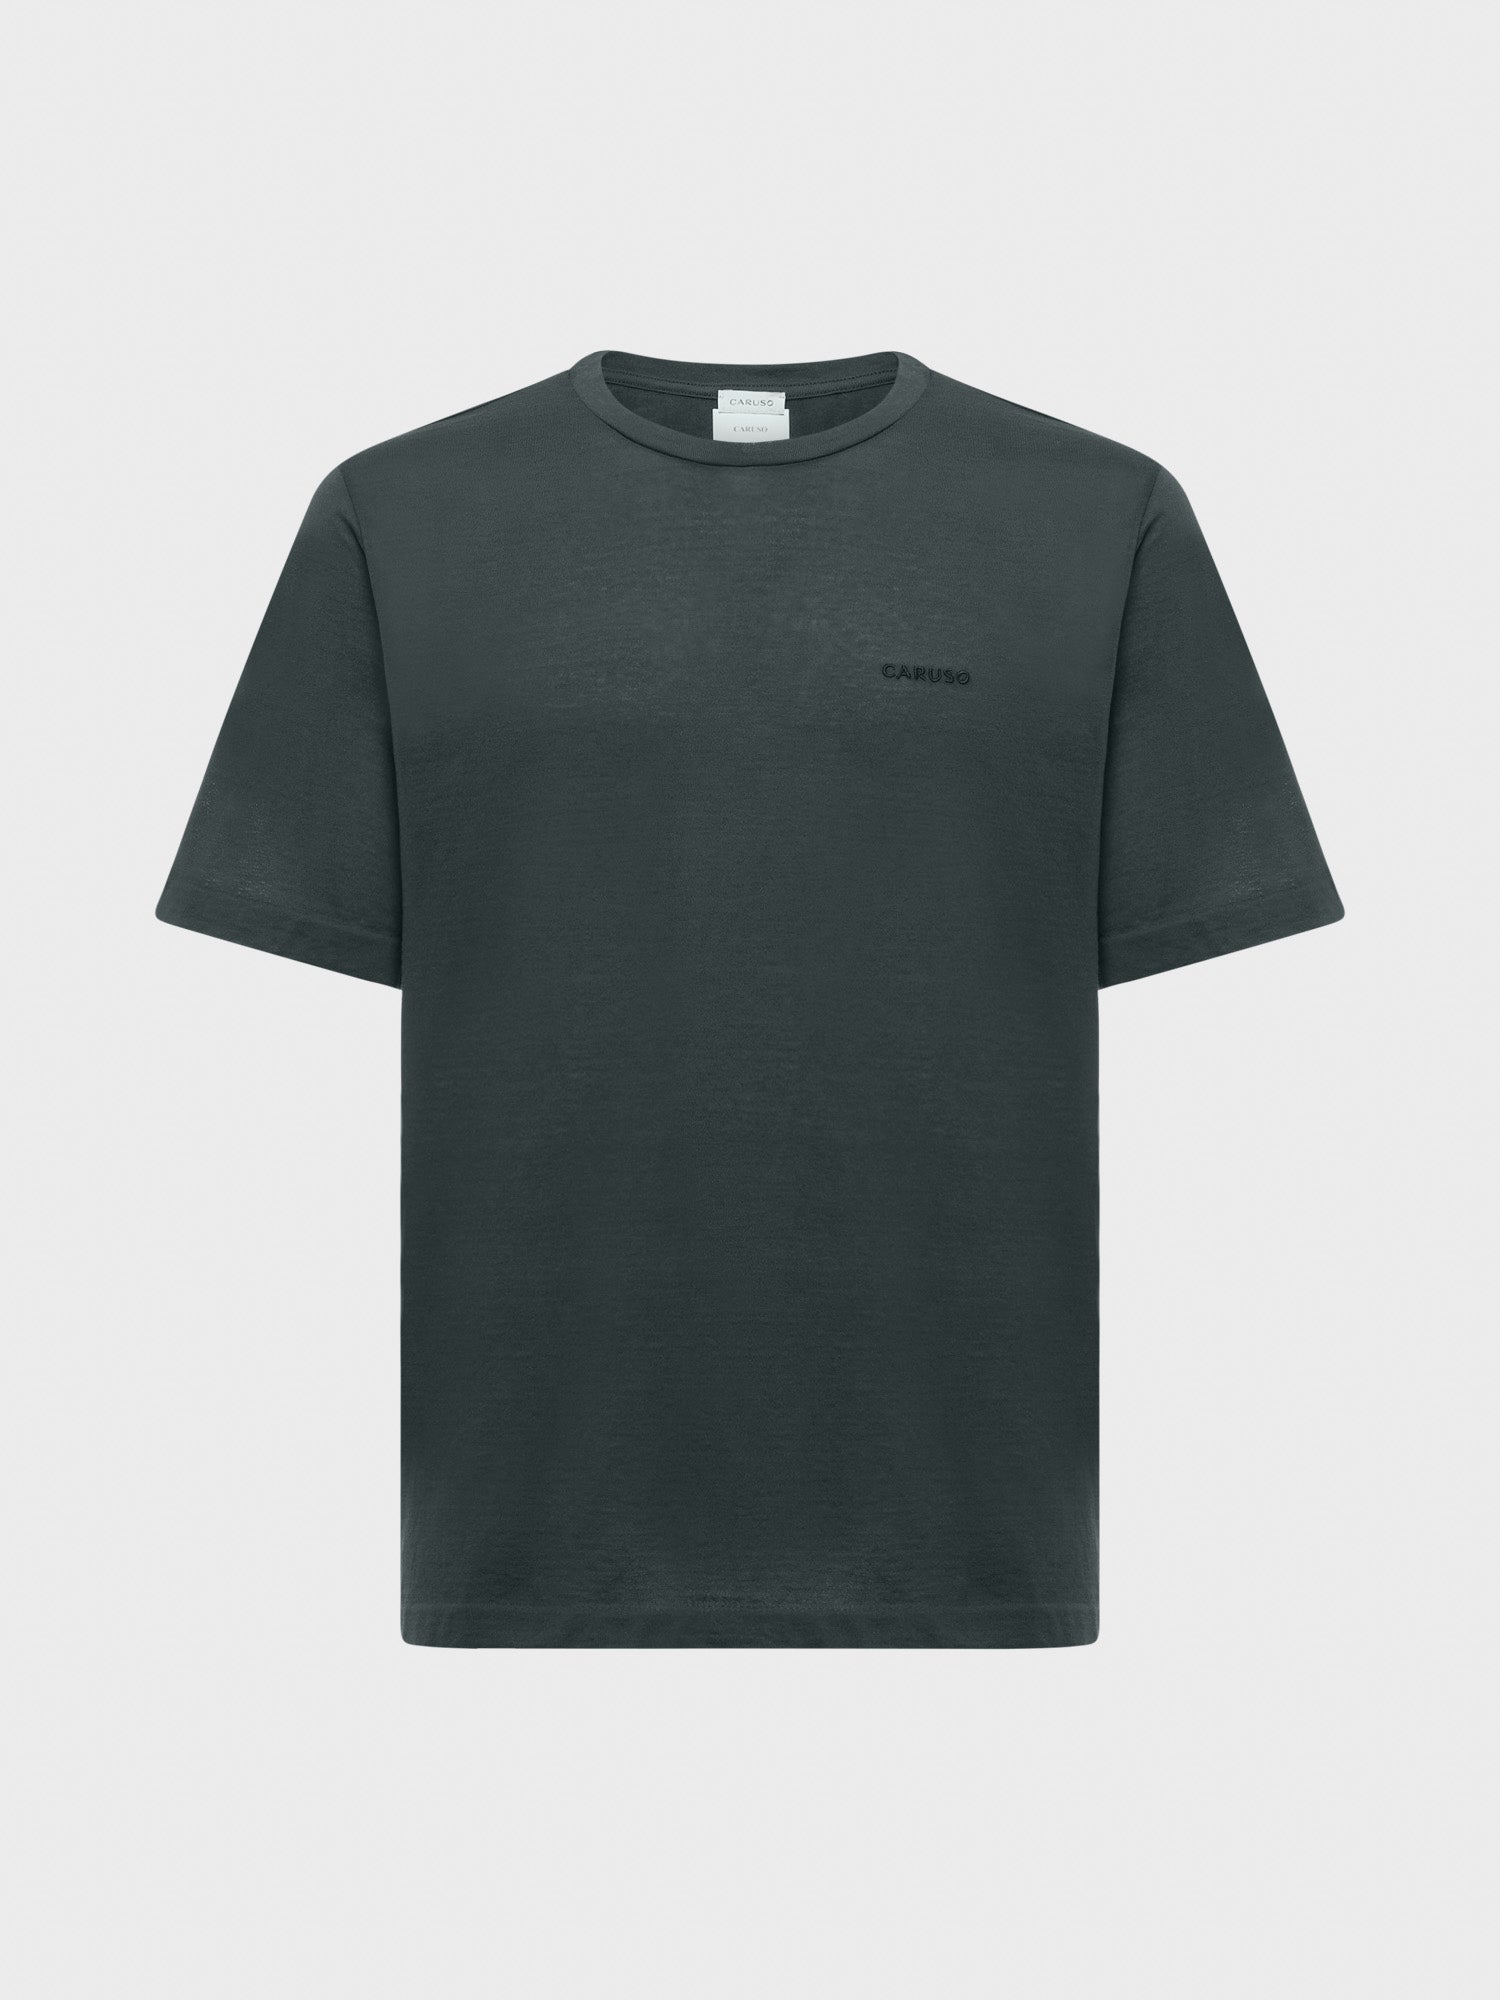 Caruso Menswear Abbigliamento Uomo T-Shirt girocollo seamless in jersey carbone still